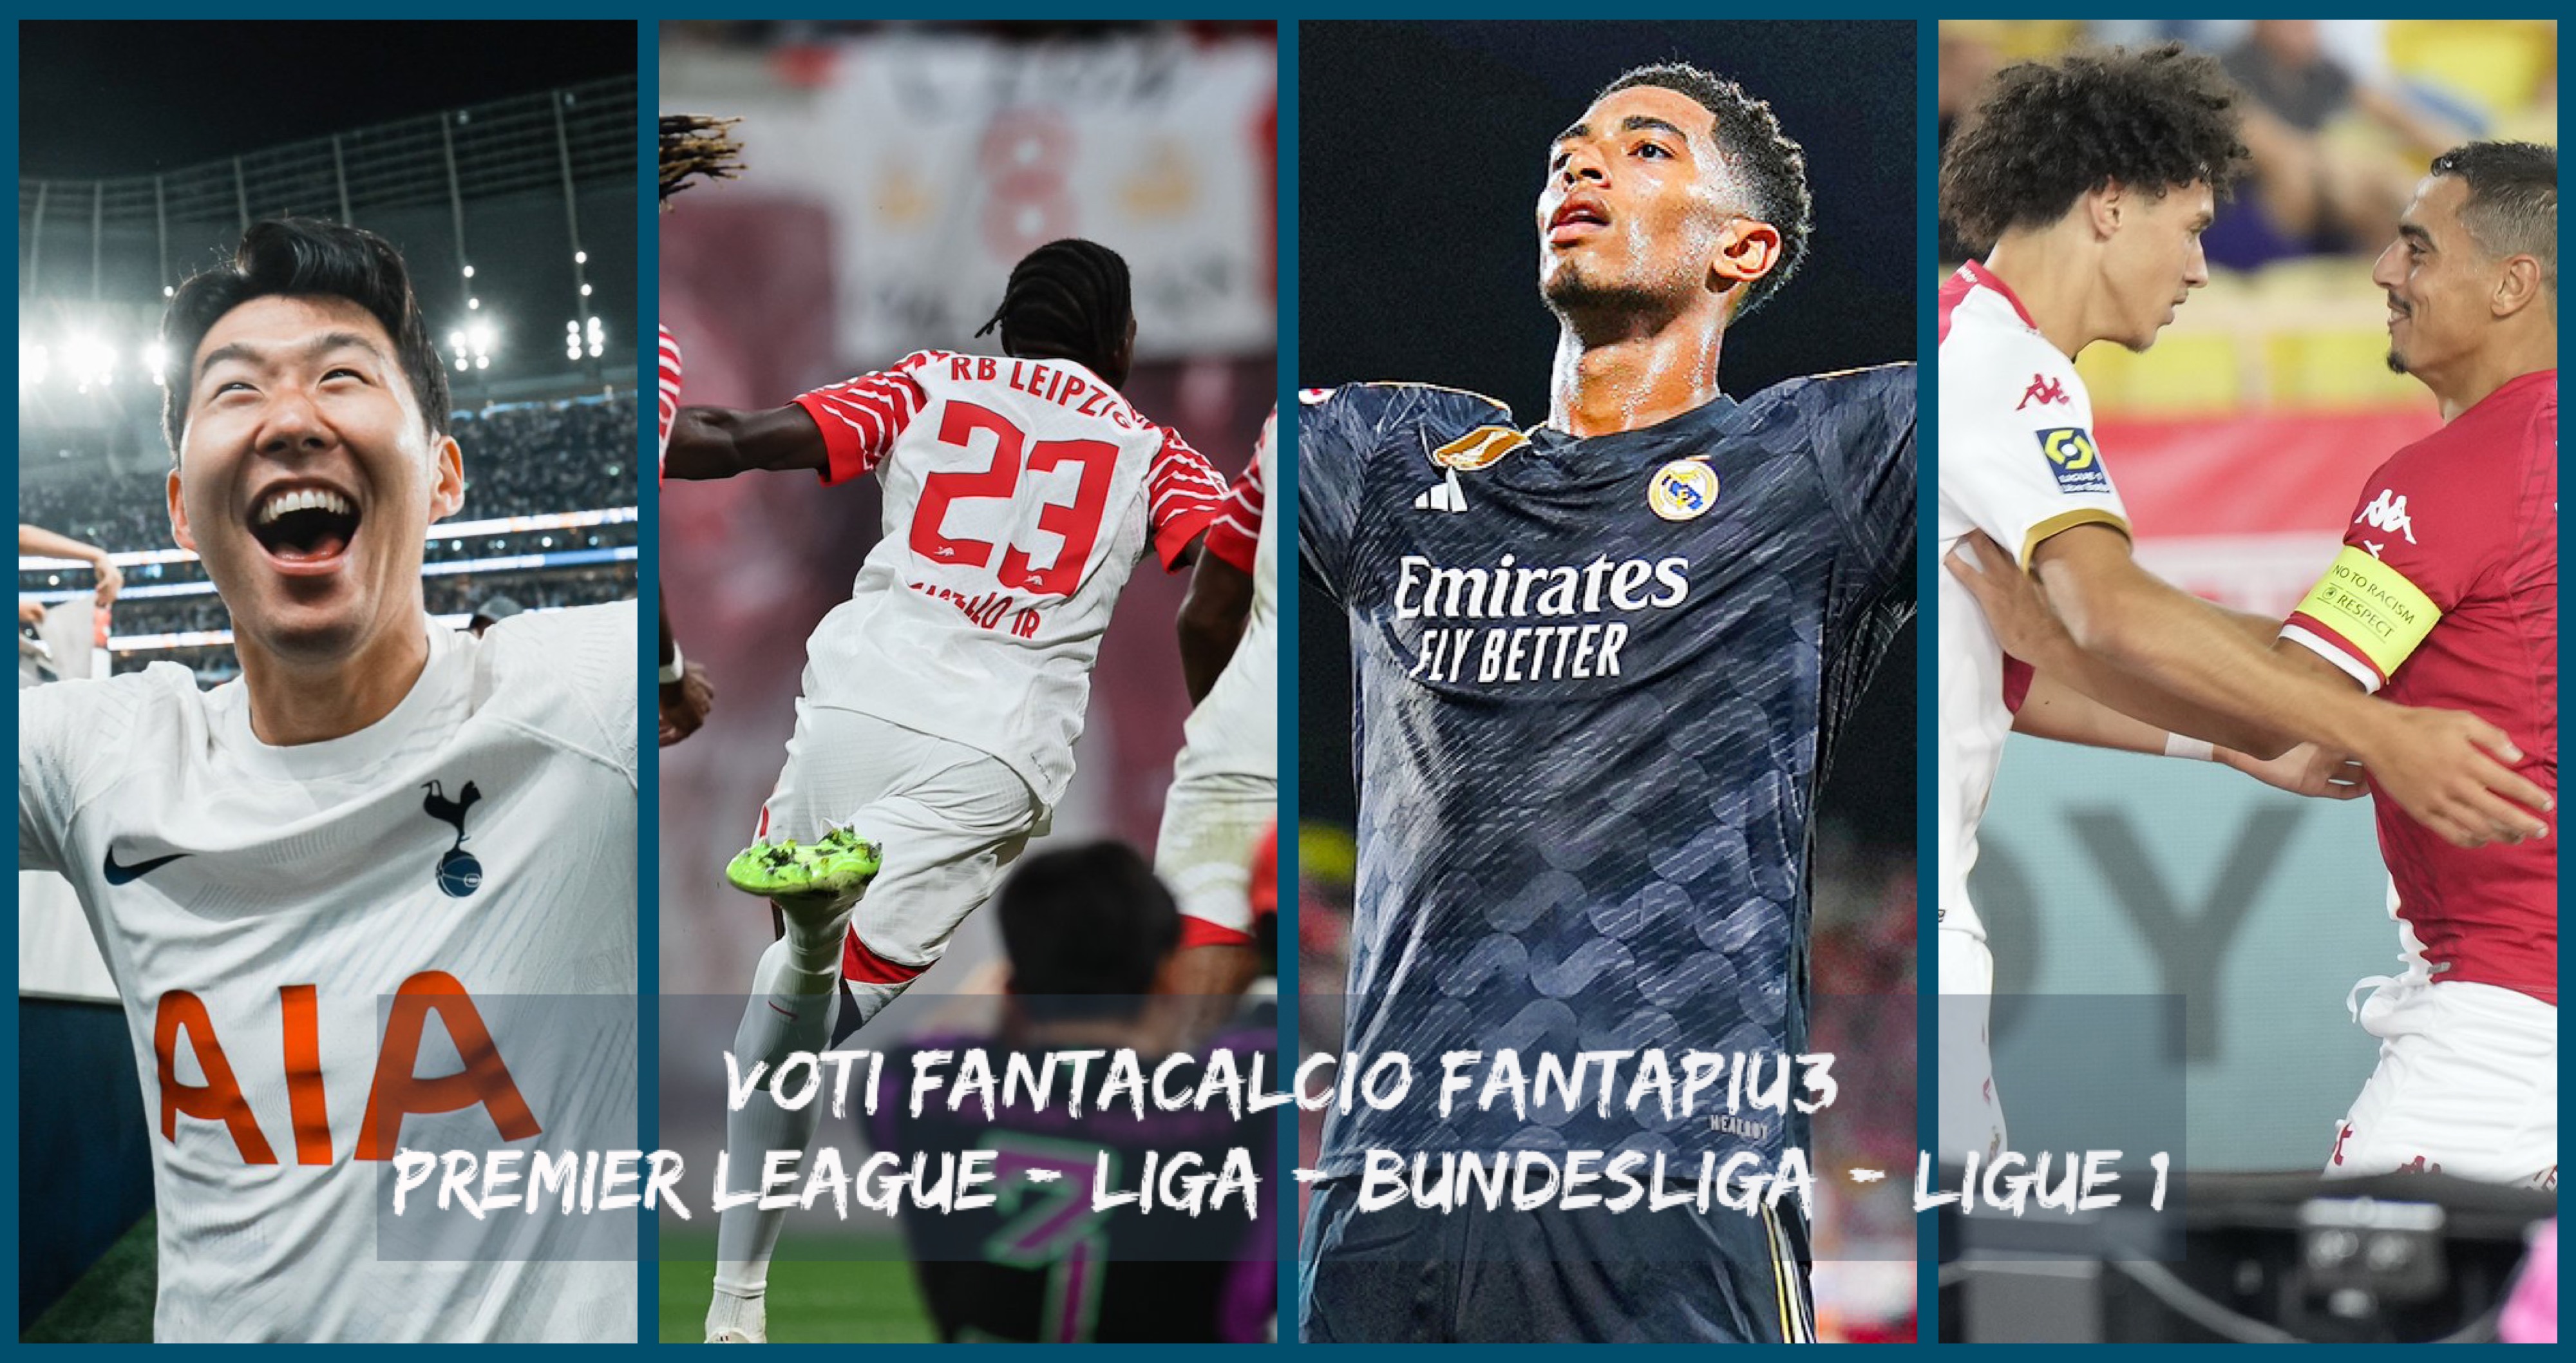 Voti fantacalcio Premier League, Liga, Bundesliga e Ligue 1